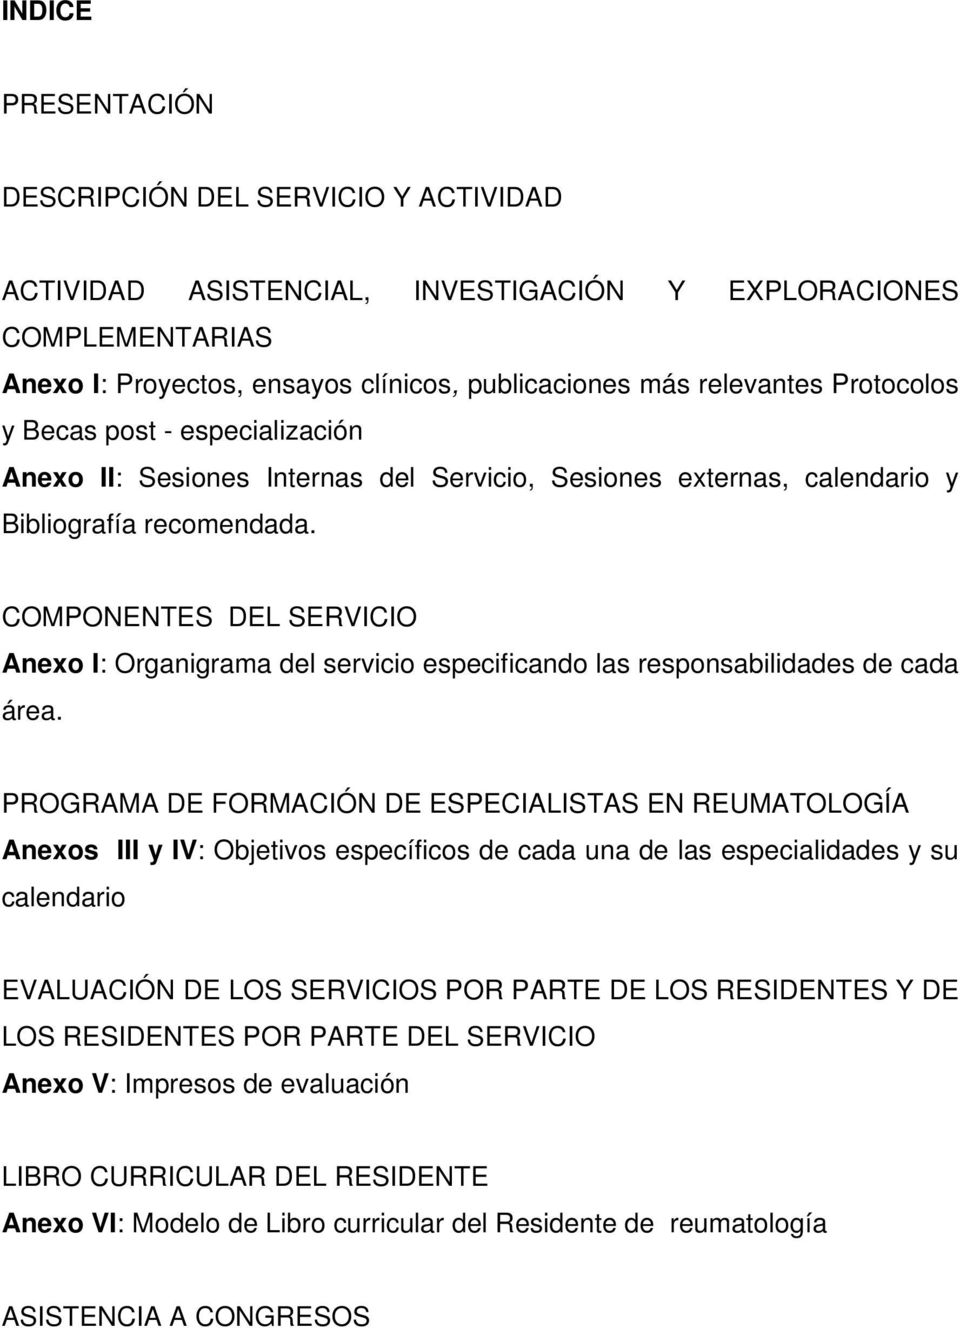 COMPONENTES DEL SERVICIO Anexo I: Organigrama del servicio especificando las responsabilidades de cada área.